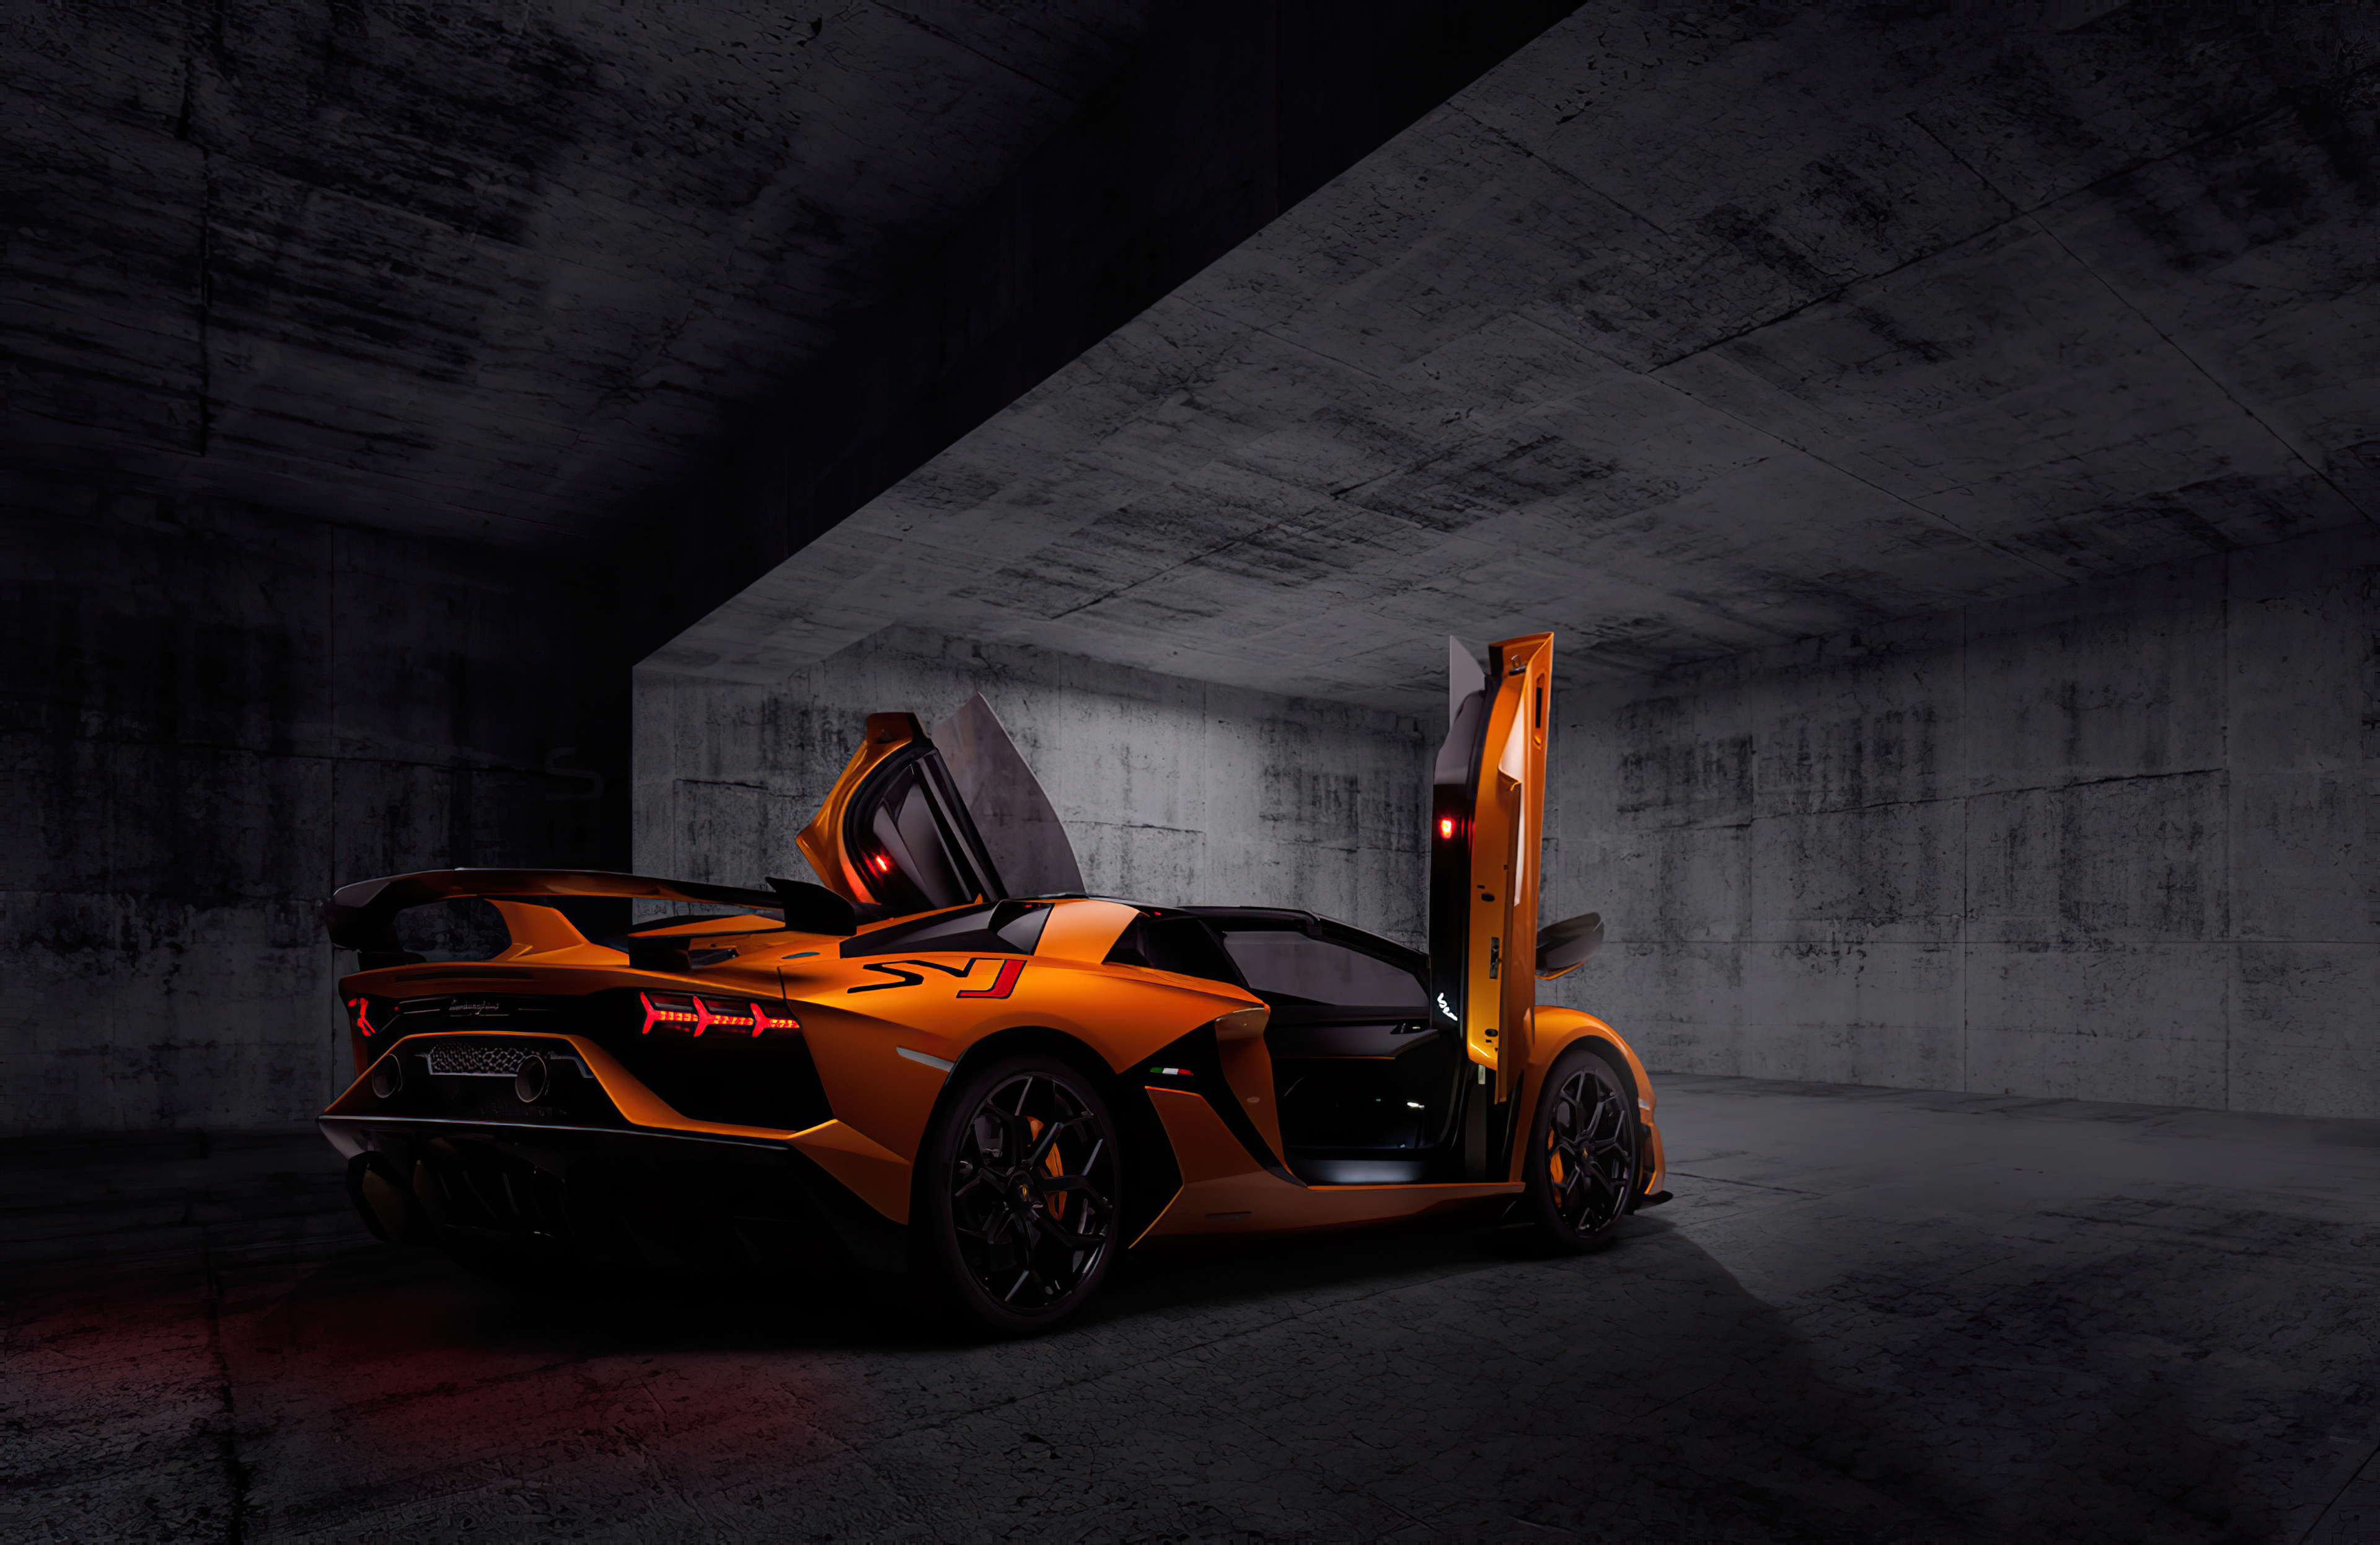 Orange Lamborghini Aventardor SVJ 4k, HD Cars, 4k Wallpapers, Images ...